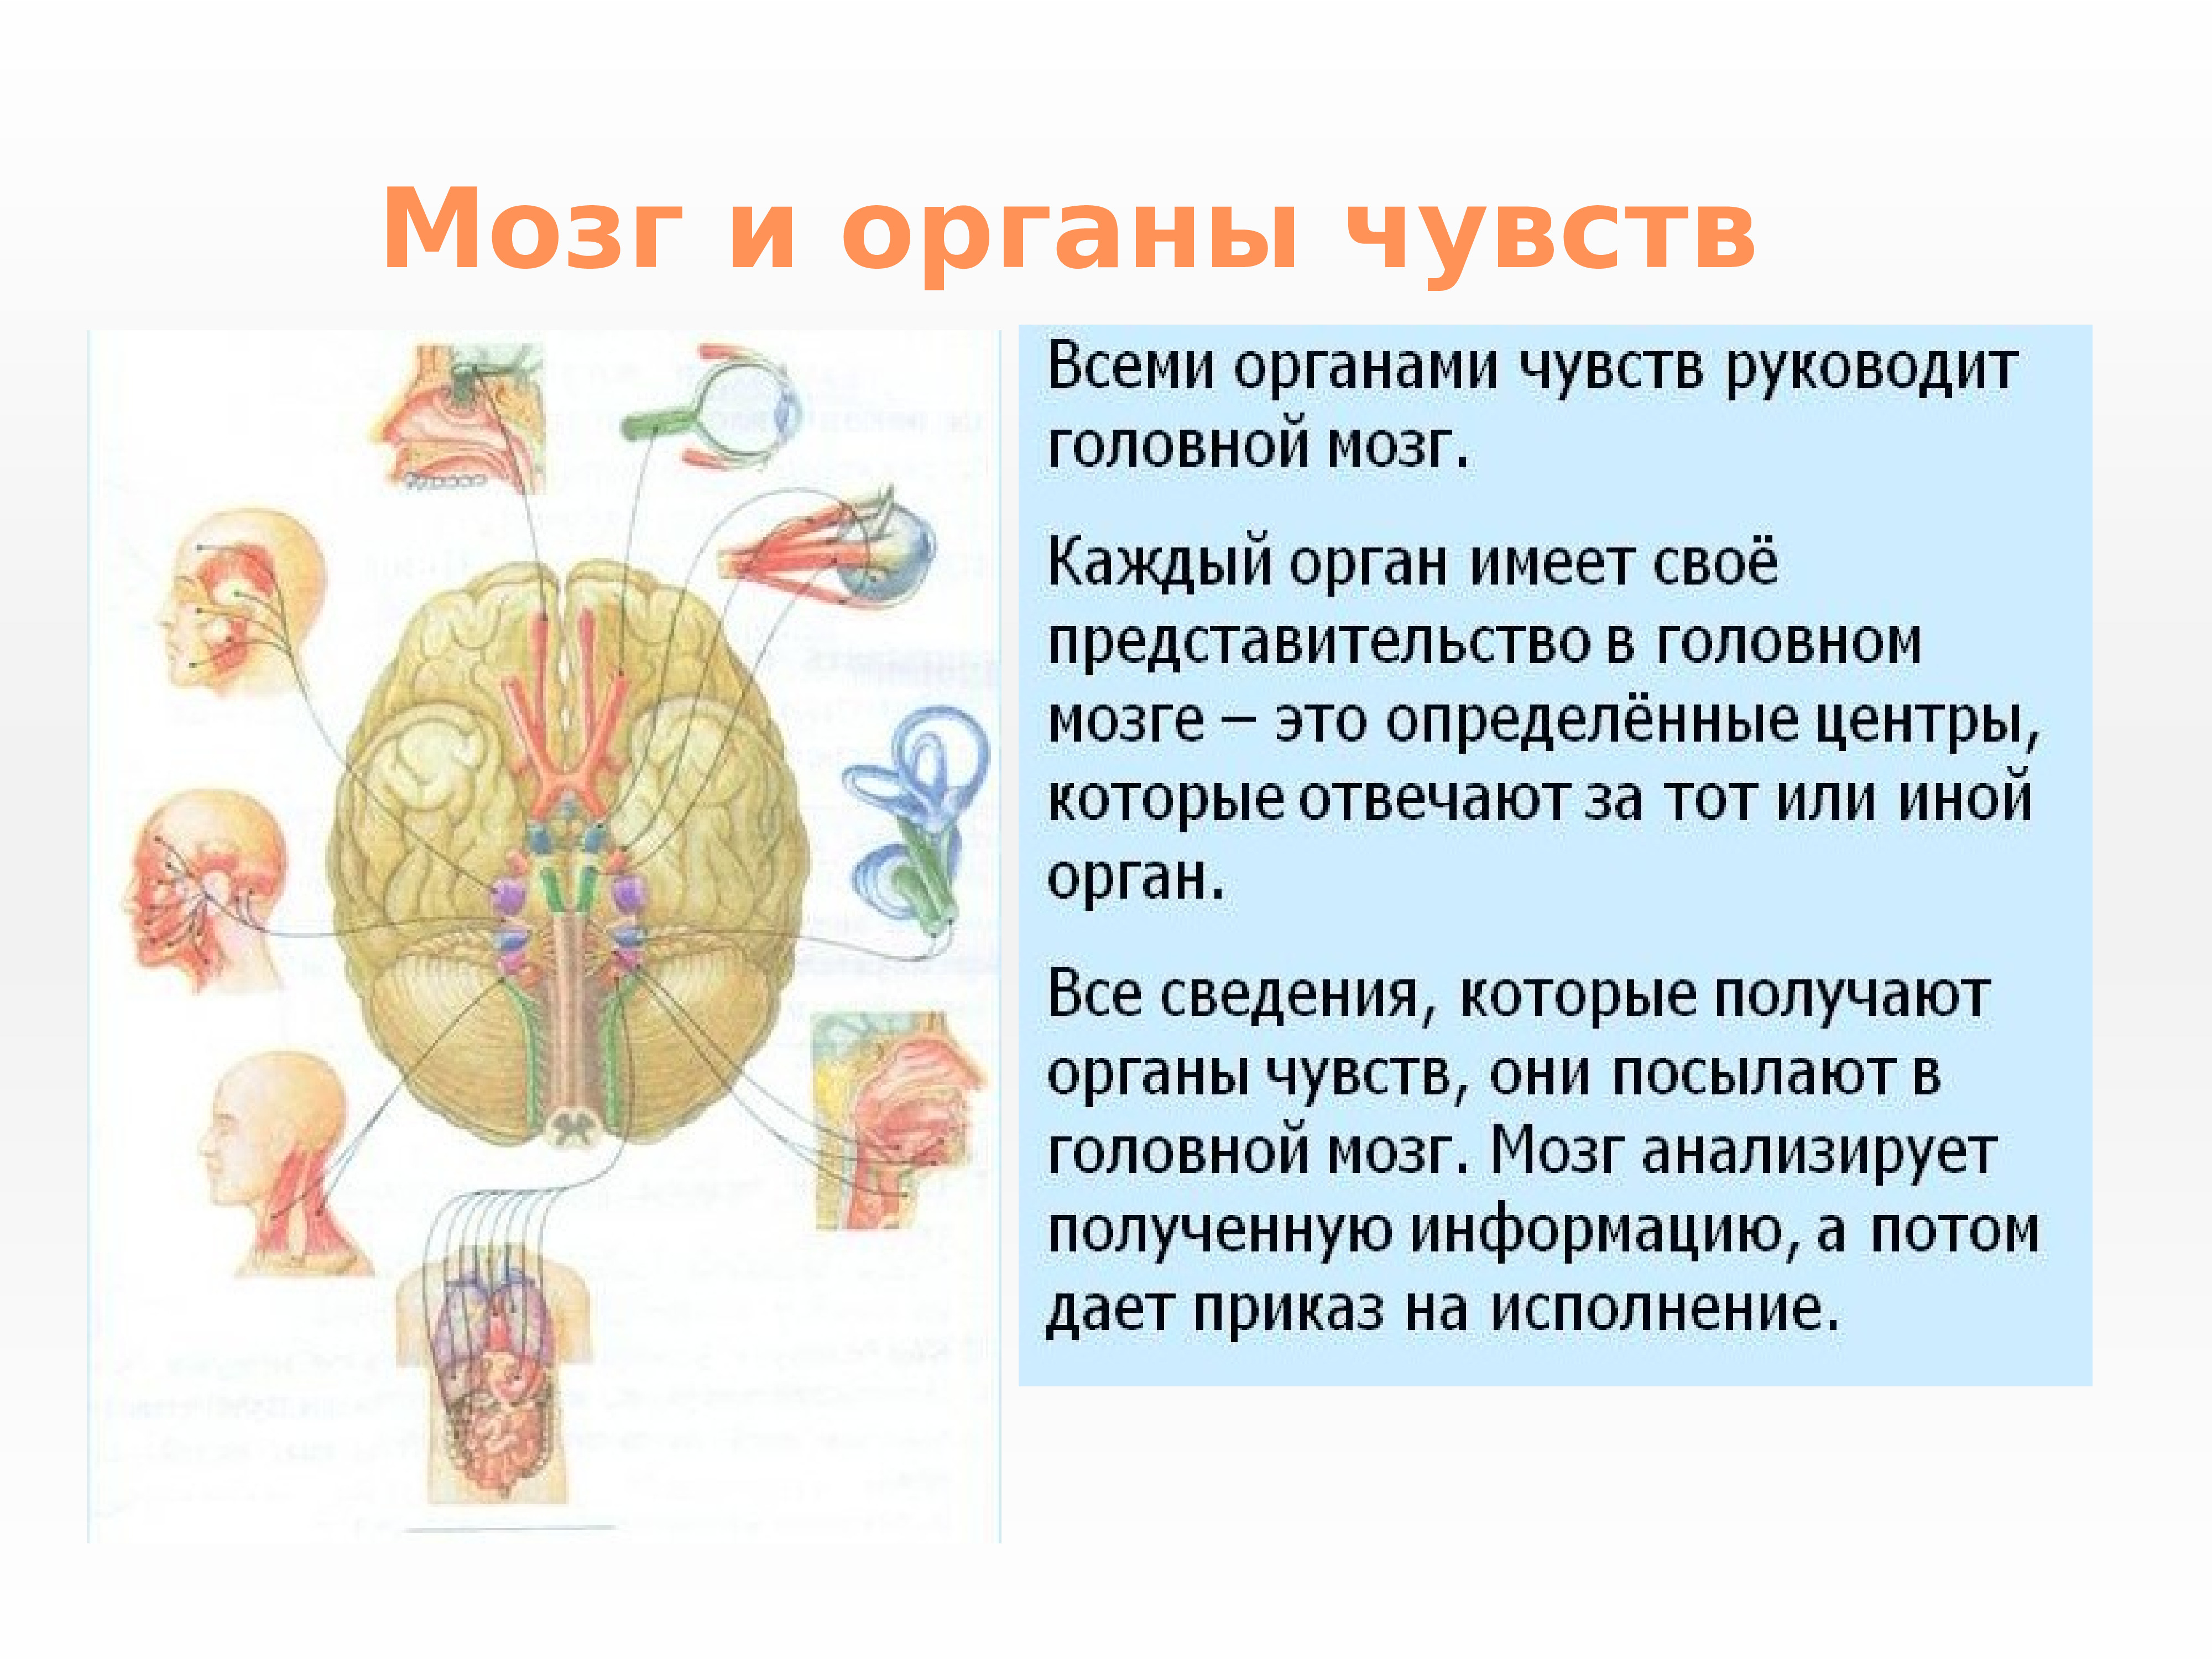 Мозг главный орган. Нервная система и органы чувств система человека. Нервная система структура организма. Строение и функции органов нервной системы. Нервная система и органы чувств строение функция.